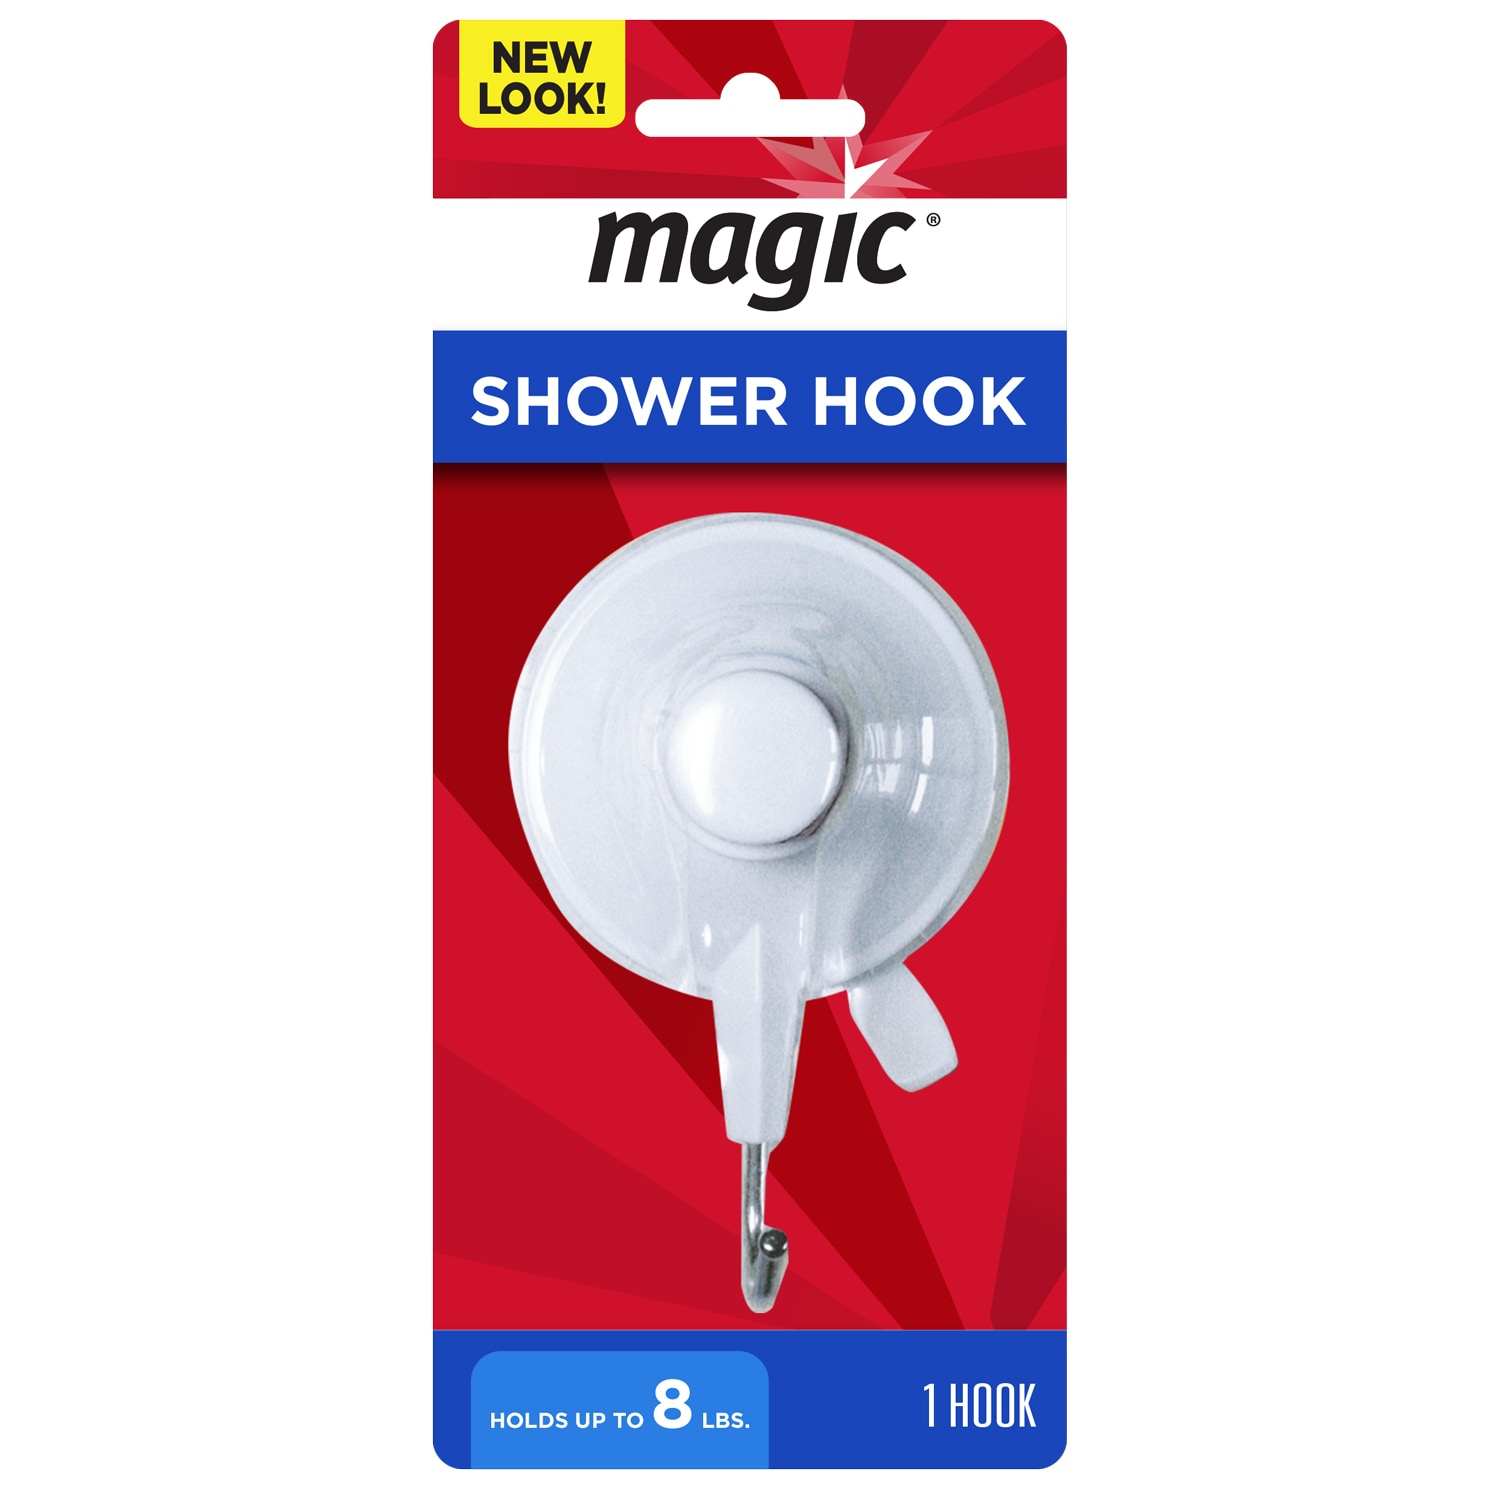 Plastic Shower Rings & Hooks at